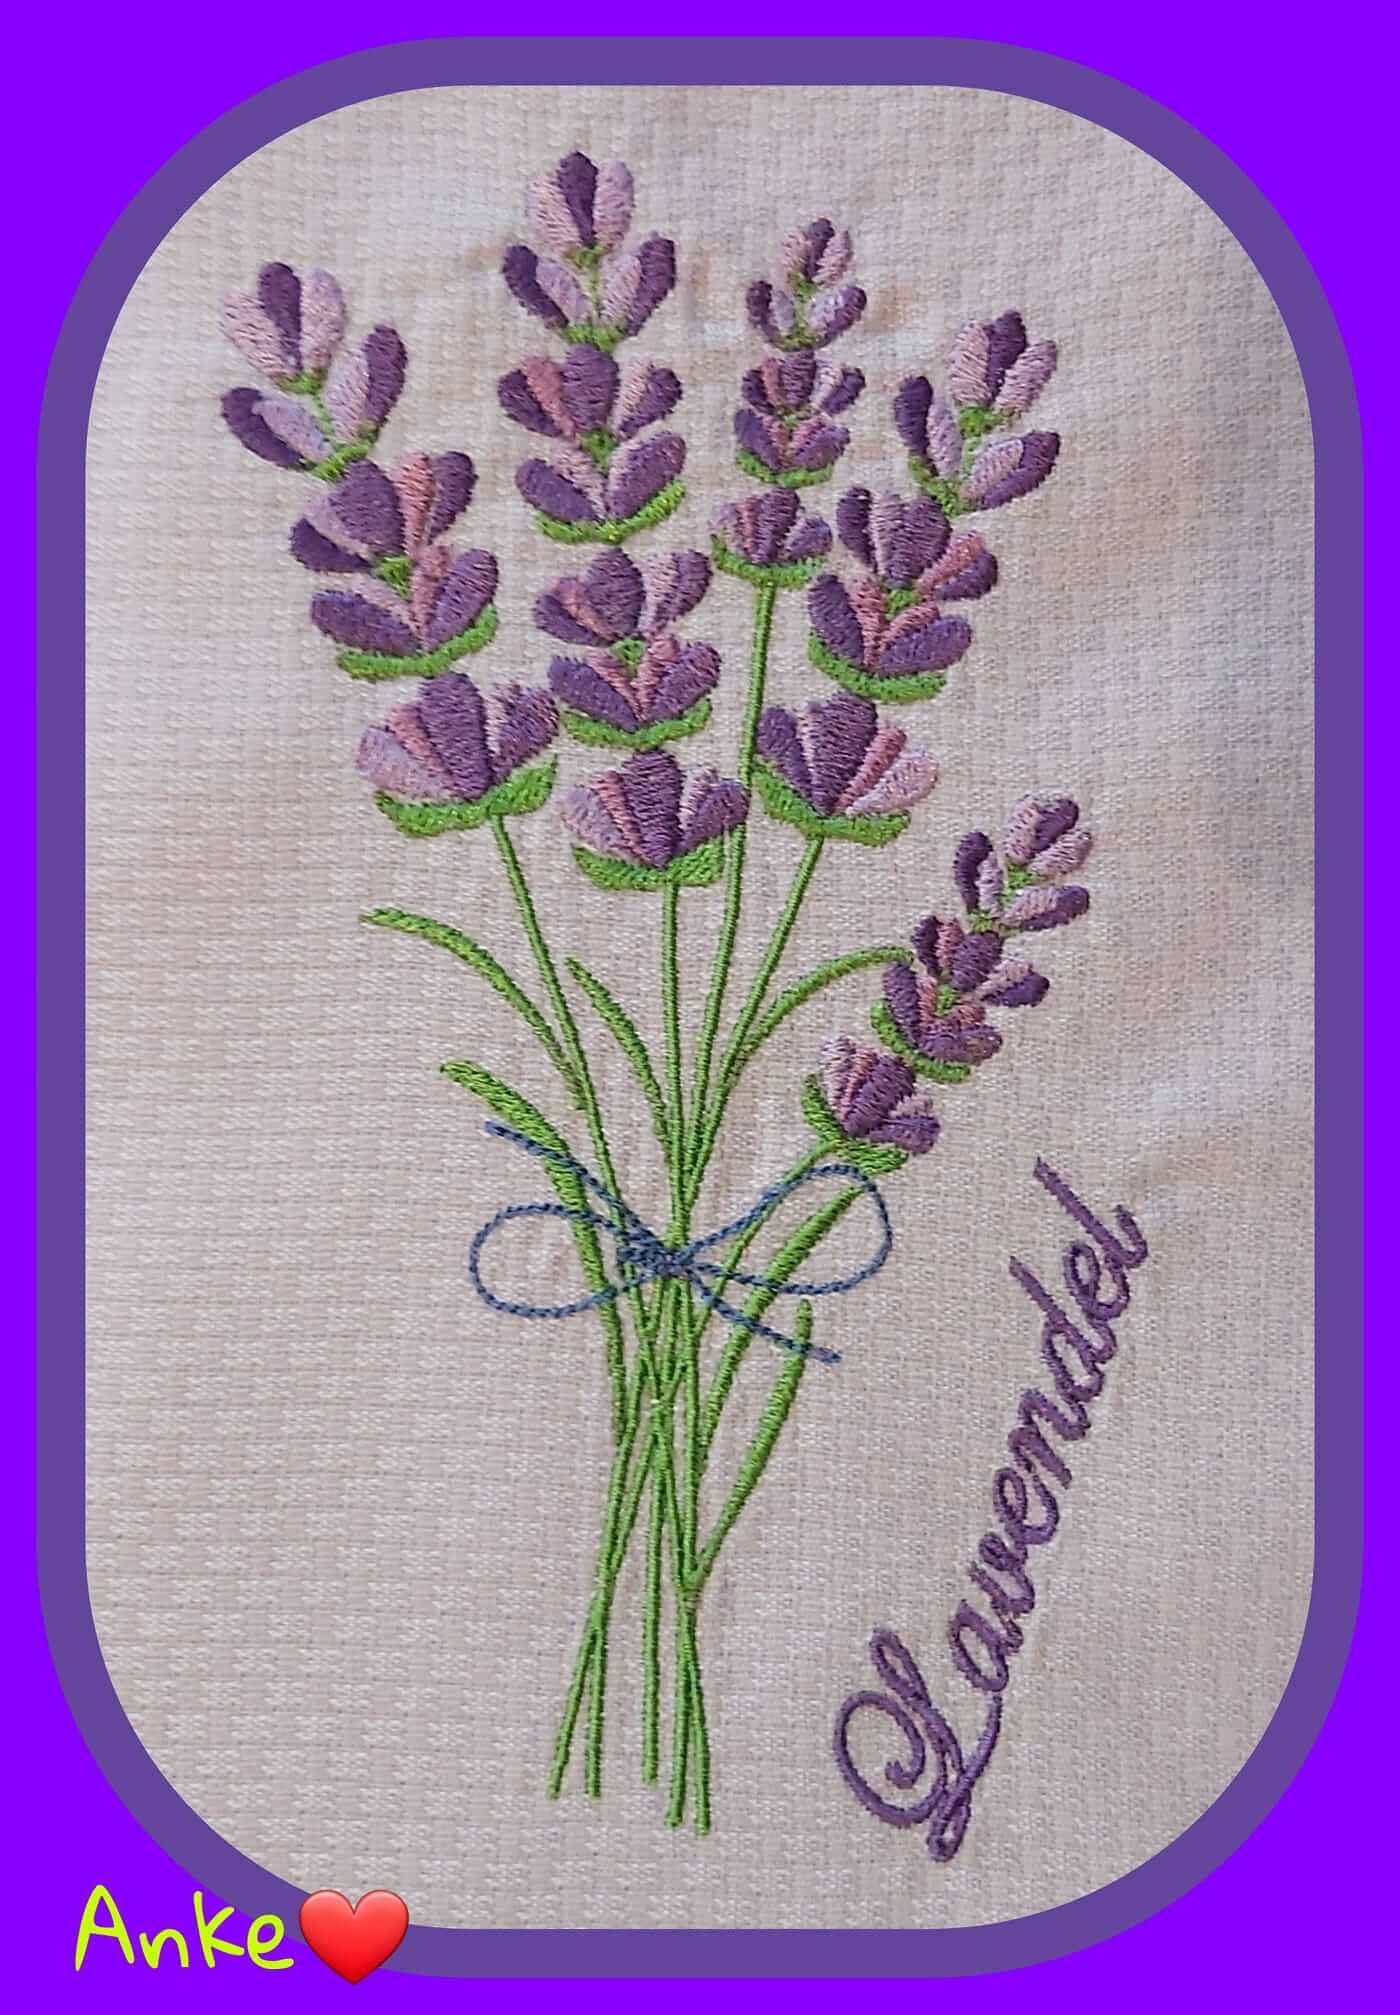 Stickdatei von stiXXie Stickdatei Lavendel Blumen Set